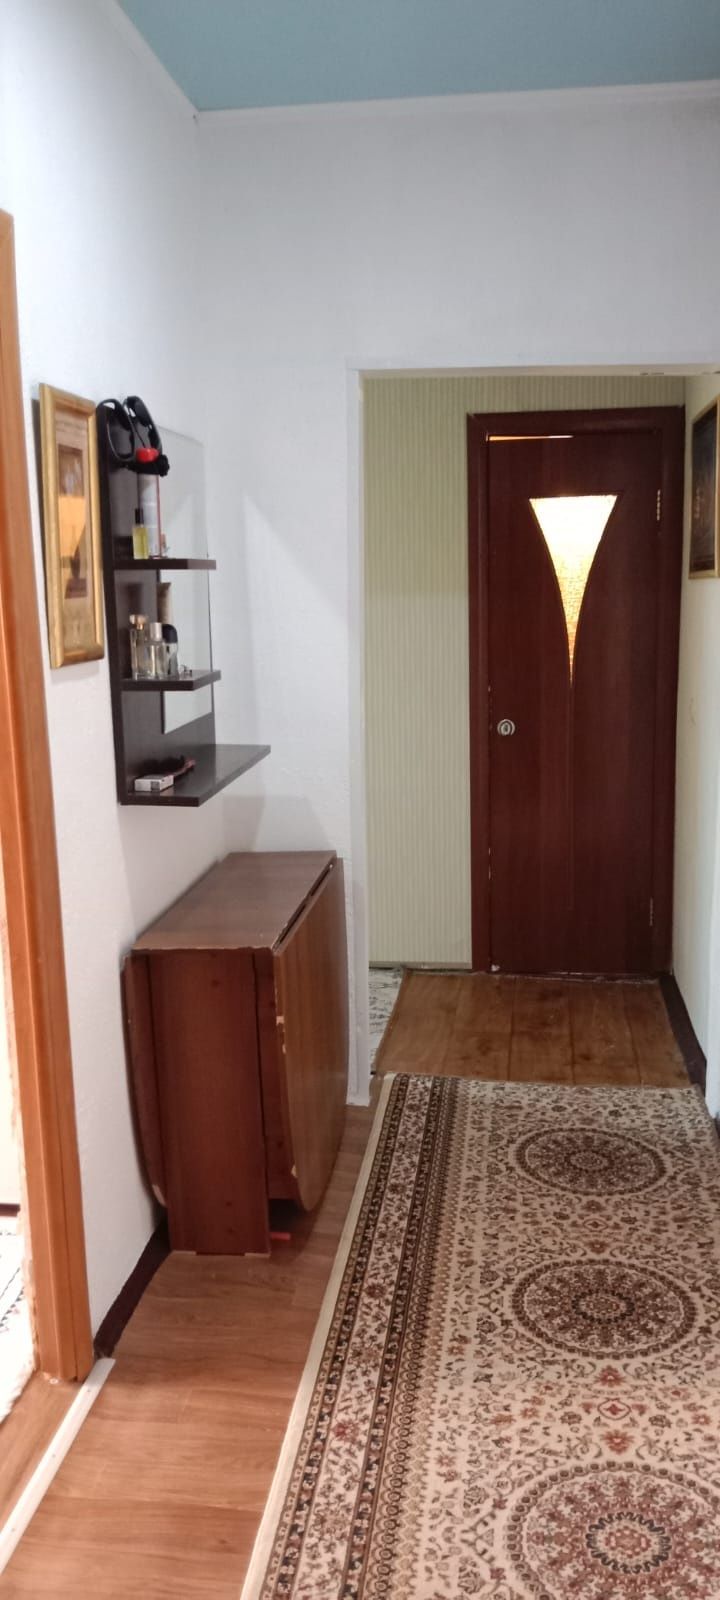 Продаеться квартира 2-х комнатную по улице Аманжолова 34